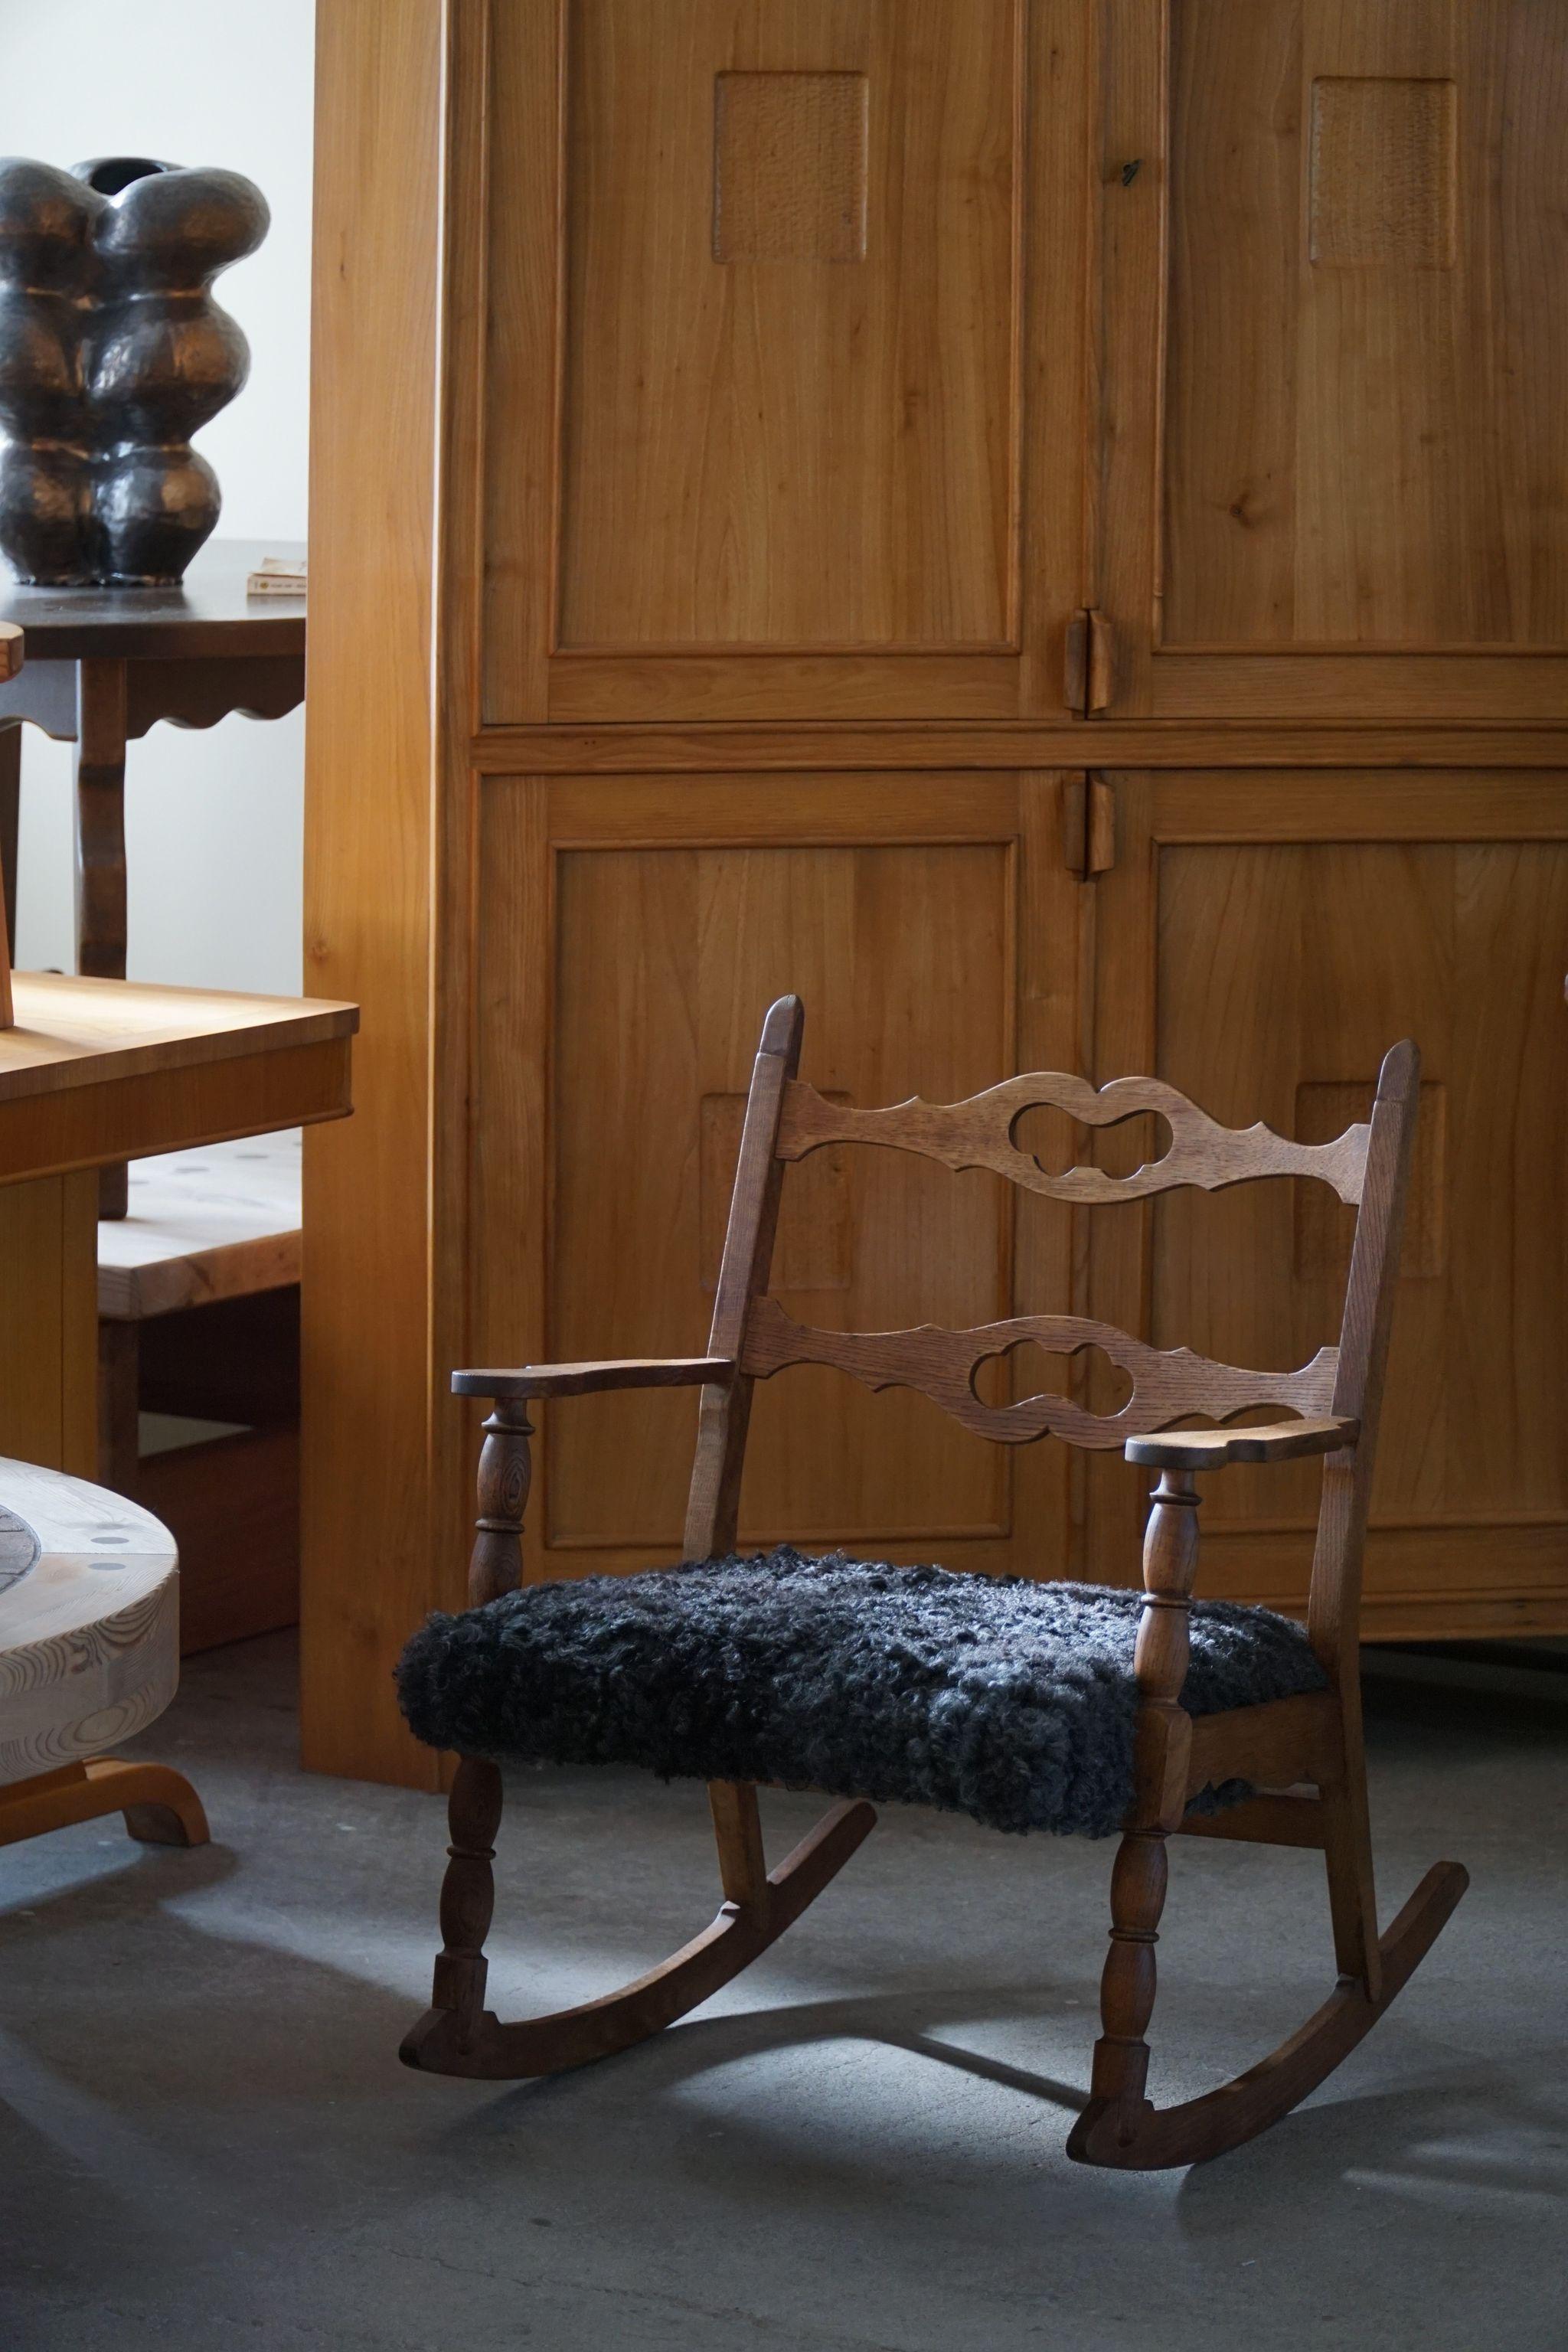 Magnifique fauteuil à bascule en chêne massif, assise retapissée en laine d'agneau. Conçu par Henning (Henry) Kjaernulf pour EG Kvalitetsmøbel, Danemark, années 1960.

Cette chaise de qualité s'harmonise avec de nombreux styles d'intérieur. Une